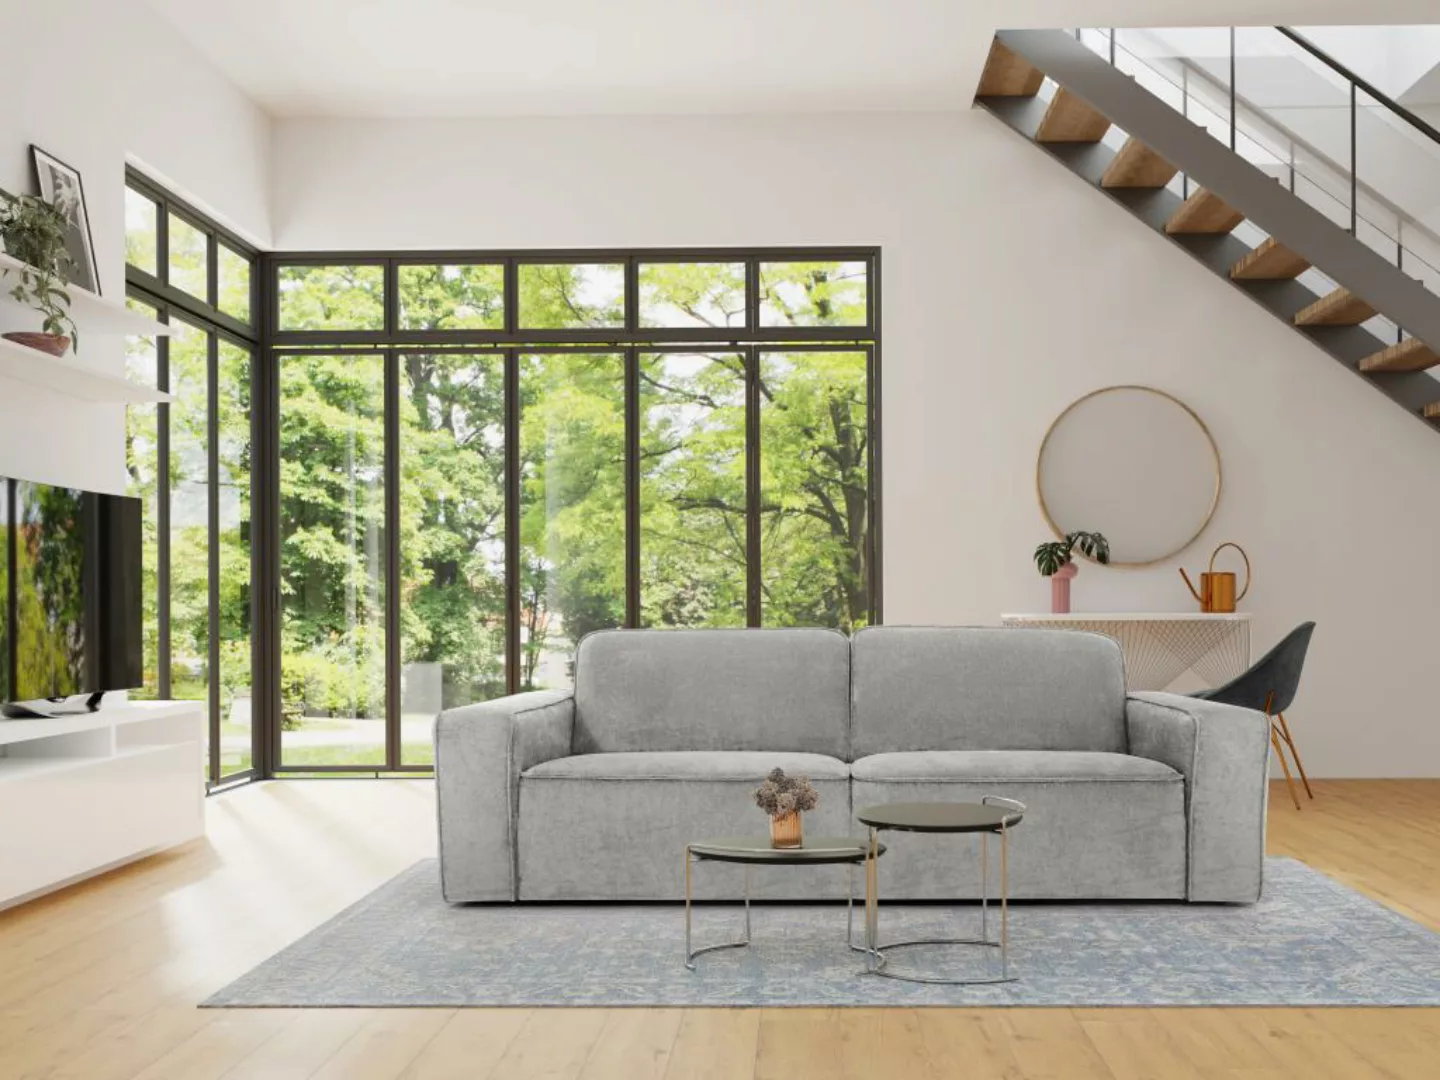 Sofa 3-Sitzer - Stoff - Hellgrau - MINATA günstig online kaufen